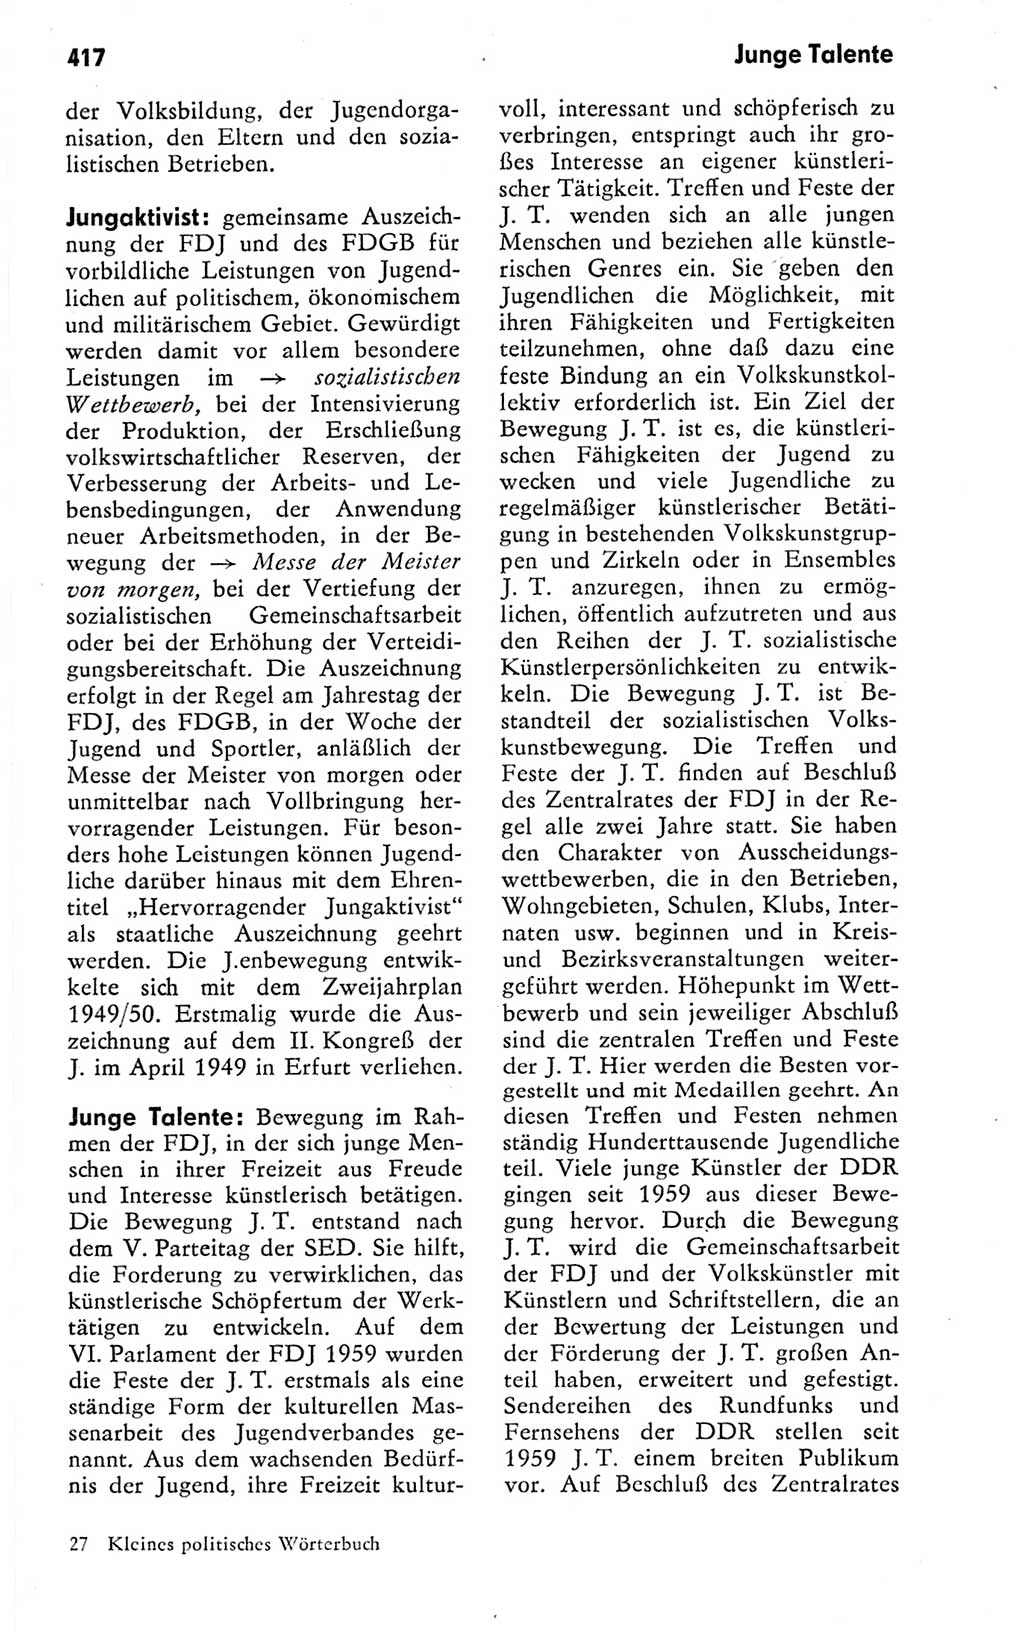 Kleines politisches Wörterbuch [Deutsche Demokratische Republik (DDR)] 1978, Seite 417 (Kl. pol. Wb. DDR 1978, S. 417)